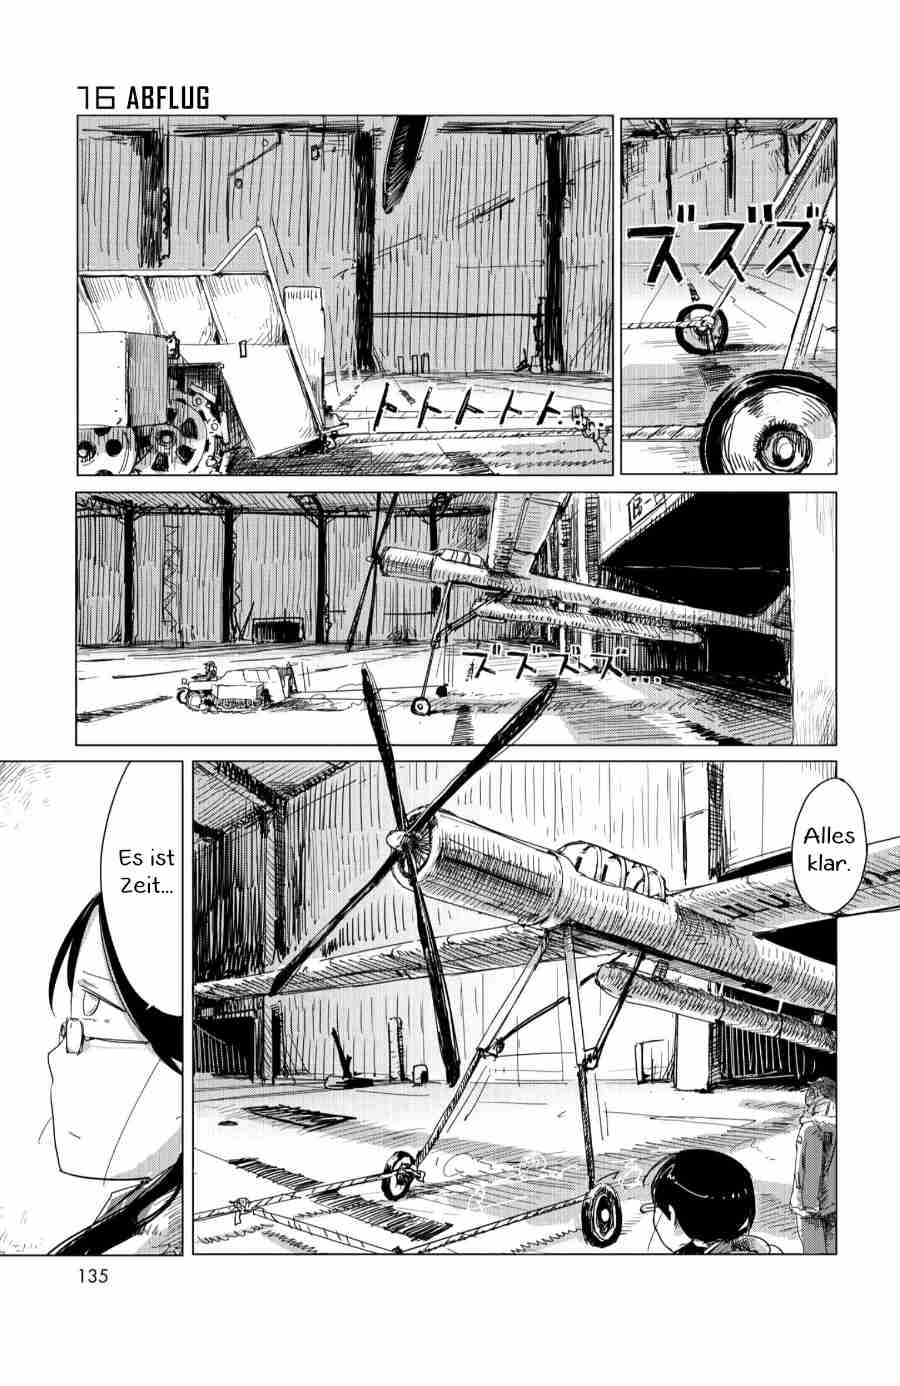 Shoujo Shuumatsu Ryokou Vol. 2 Ch. 16 Abflug